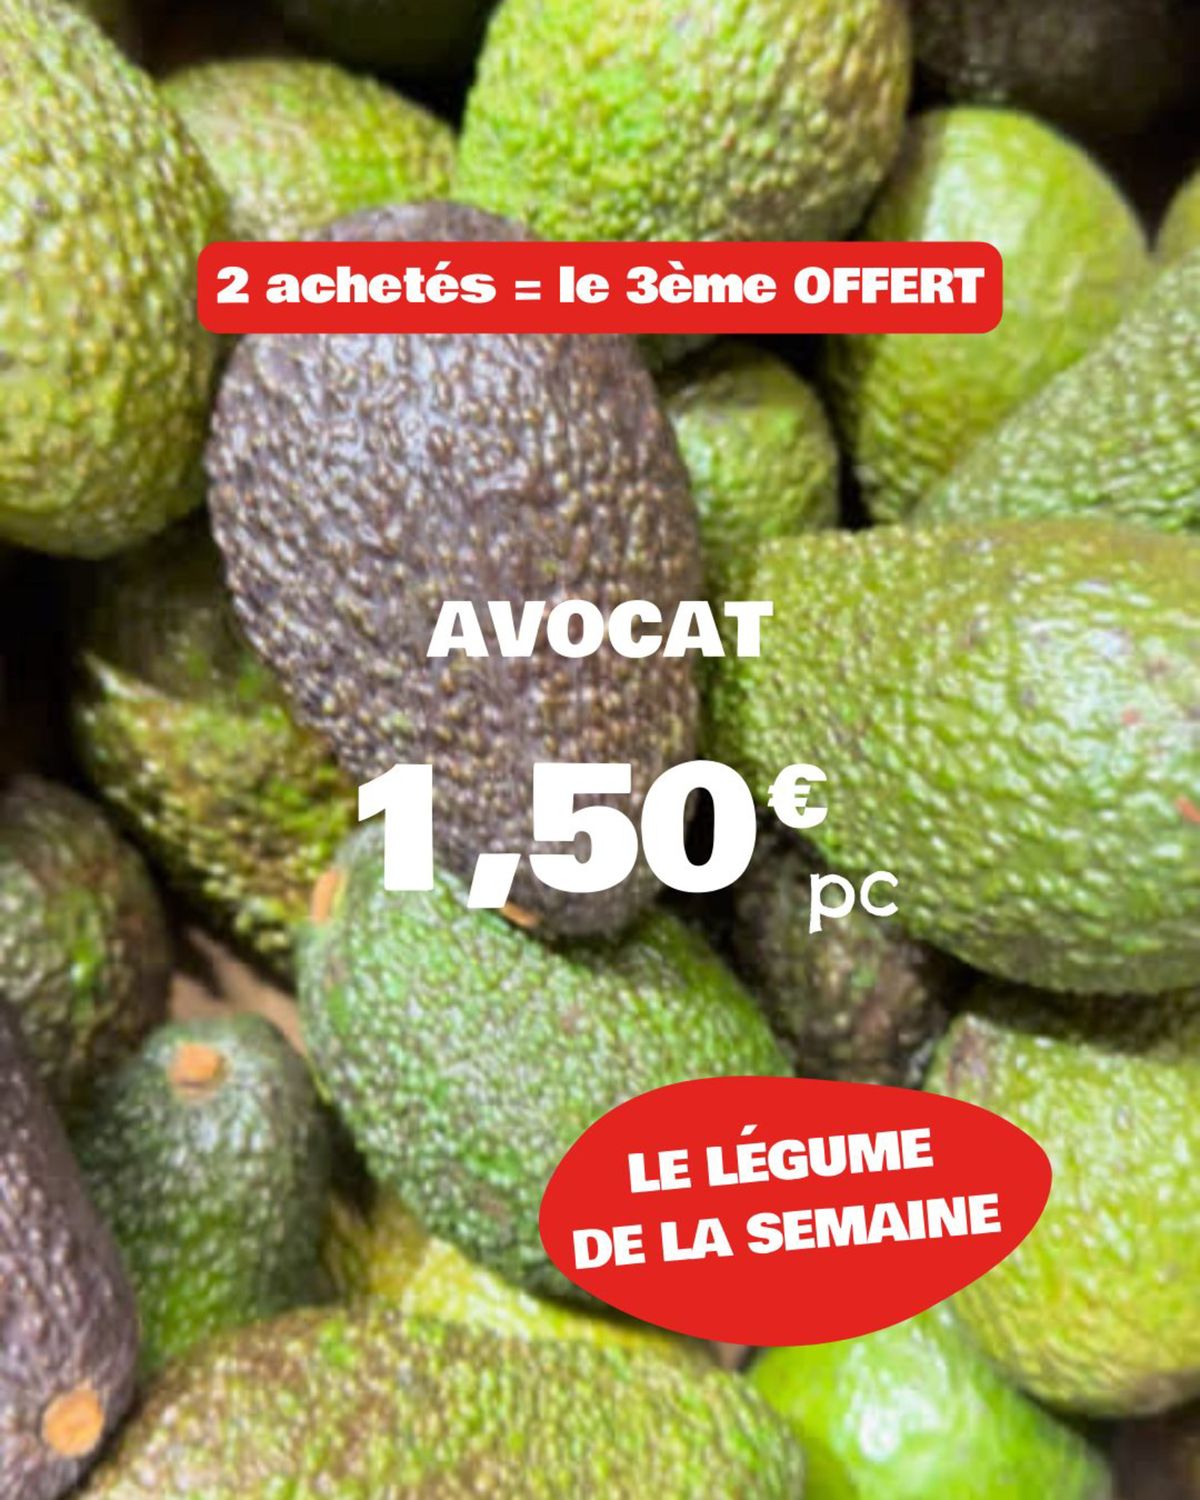 Catalogue NOUS anti-gaspi : il s'agit des Fruits et Légumes de la semaine !, page 00008